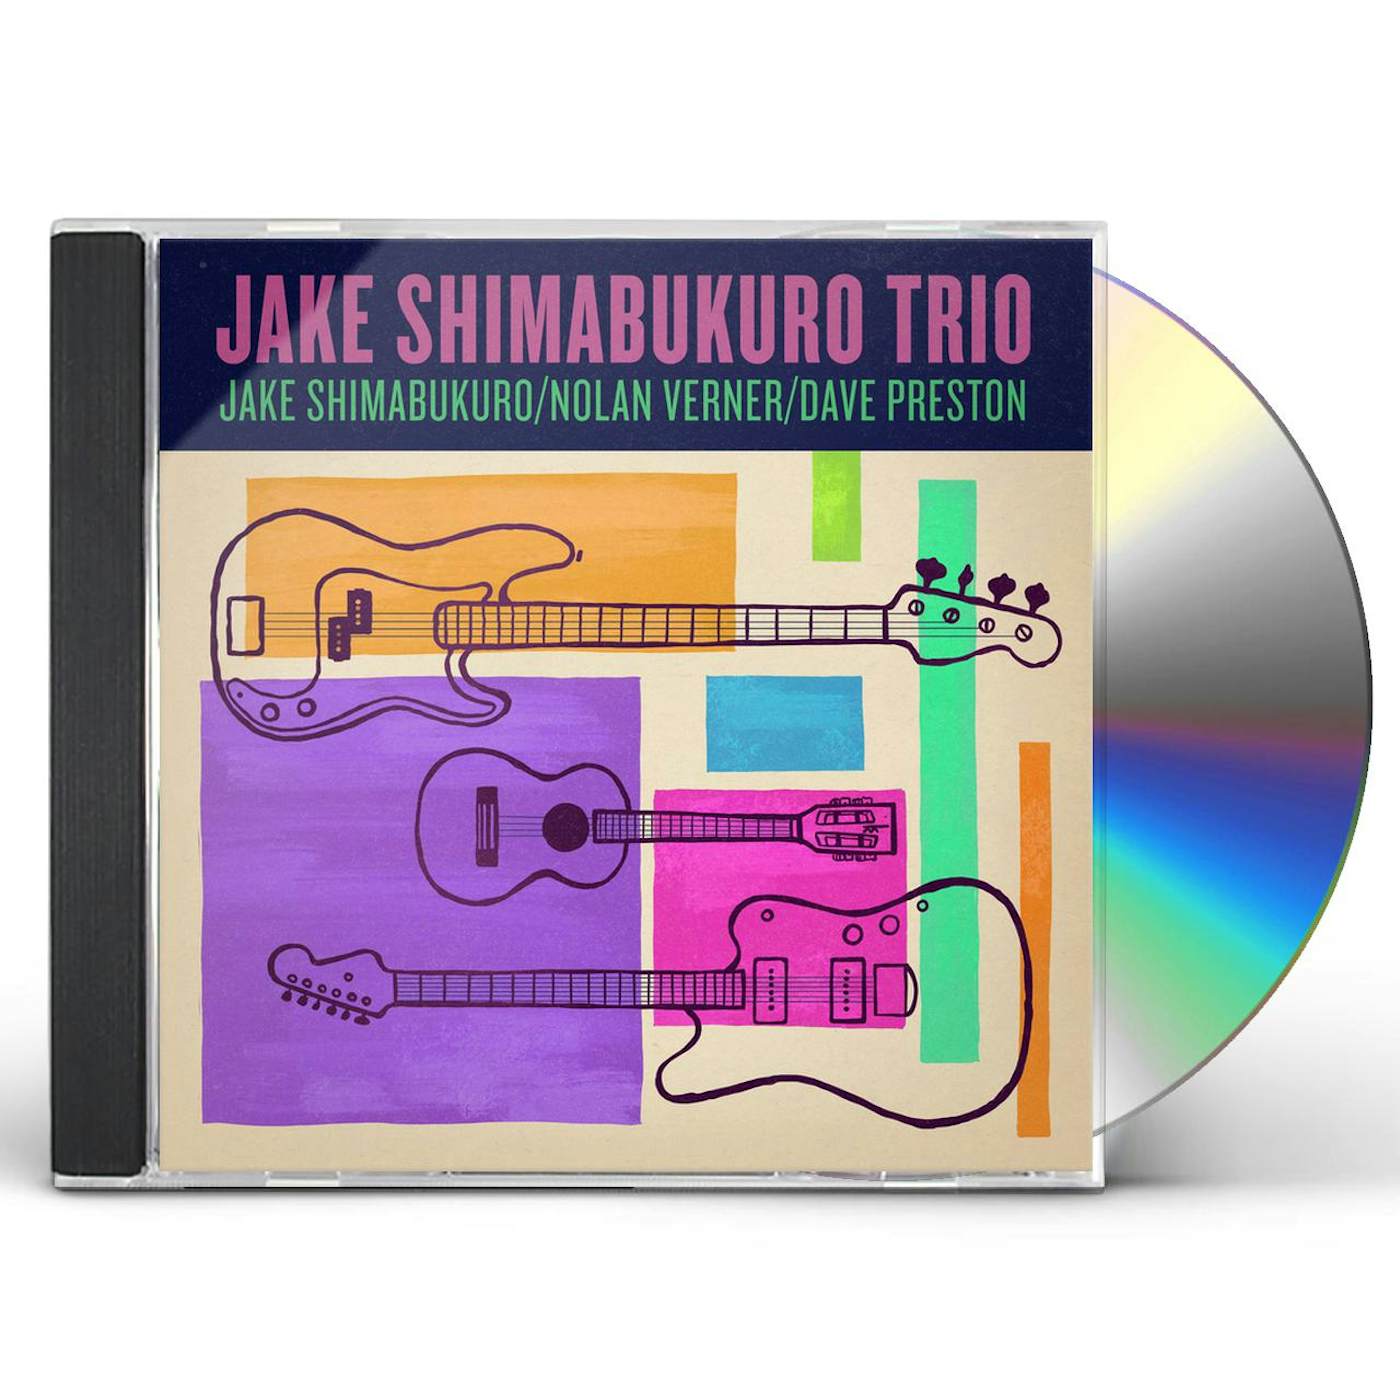 Jake Shimabukuro / Nolan Verner / Dave Preston TRIO CD